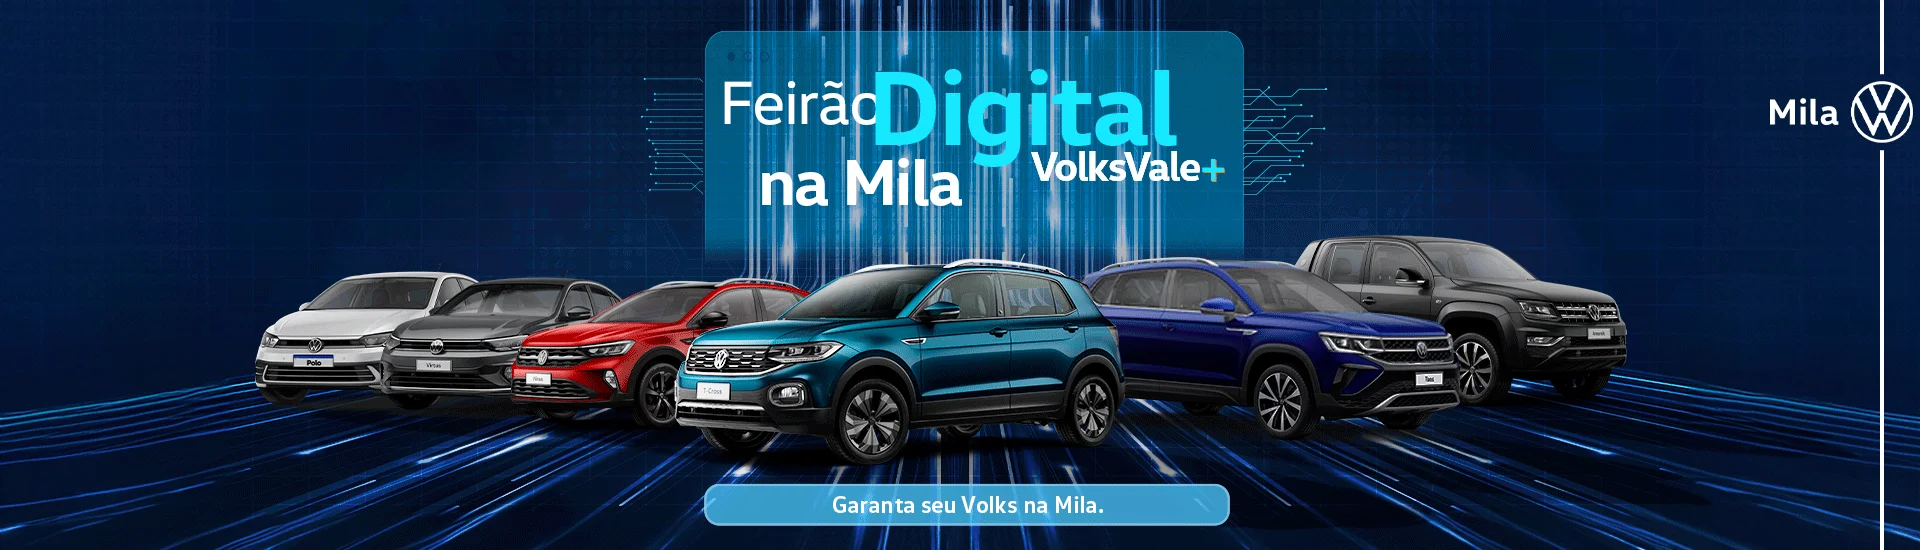 Feirão Digital VolksVale+ na Mila